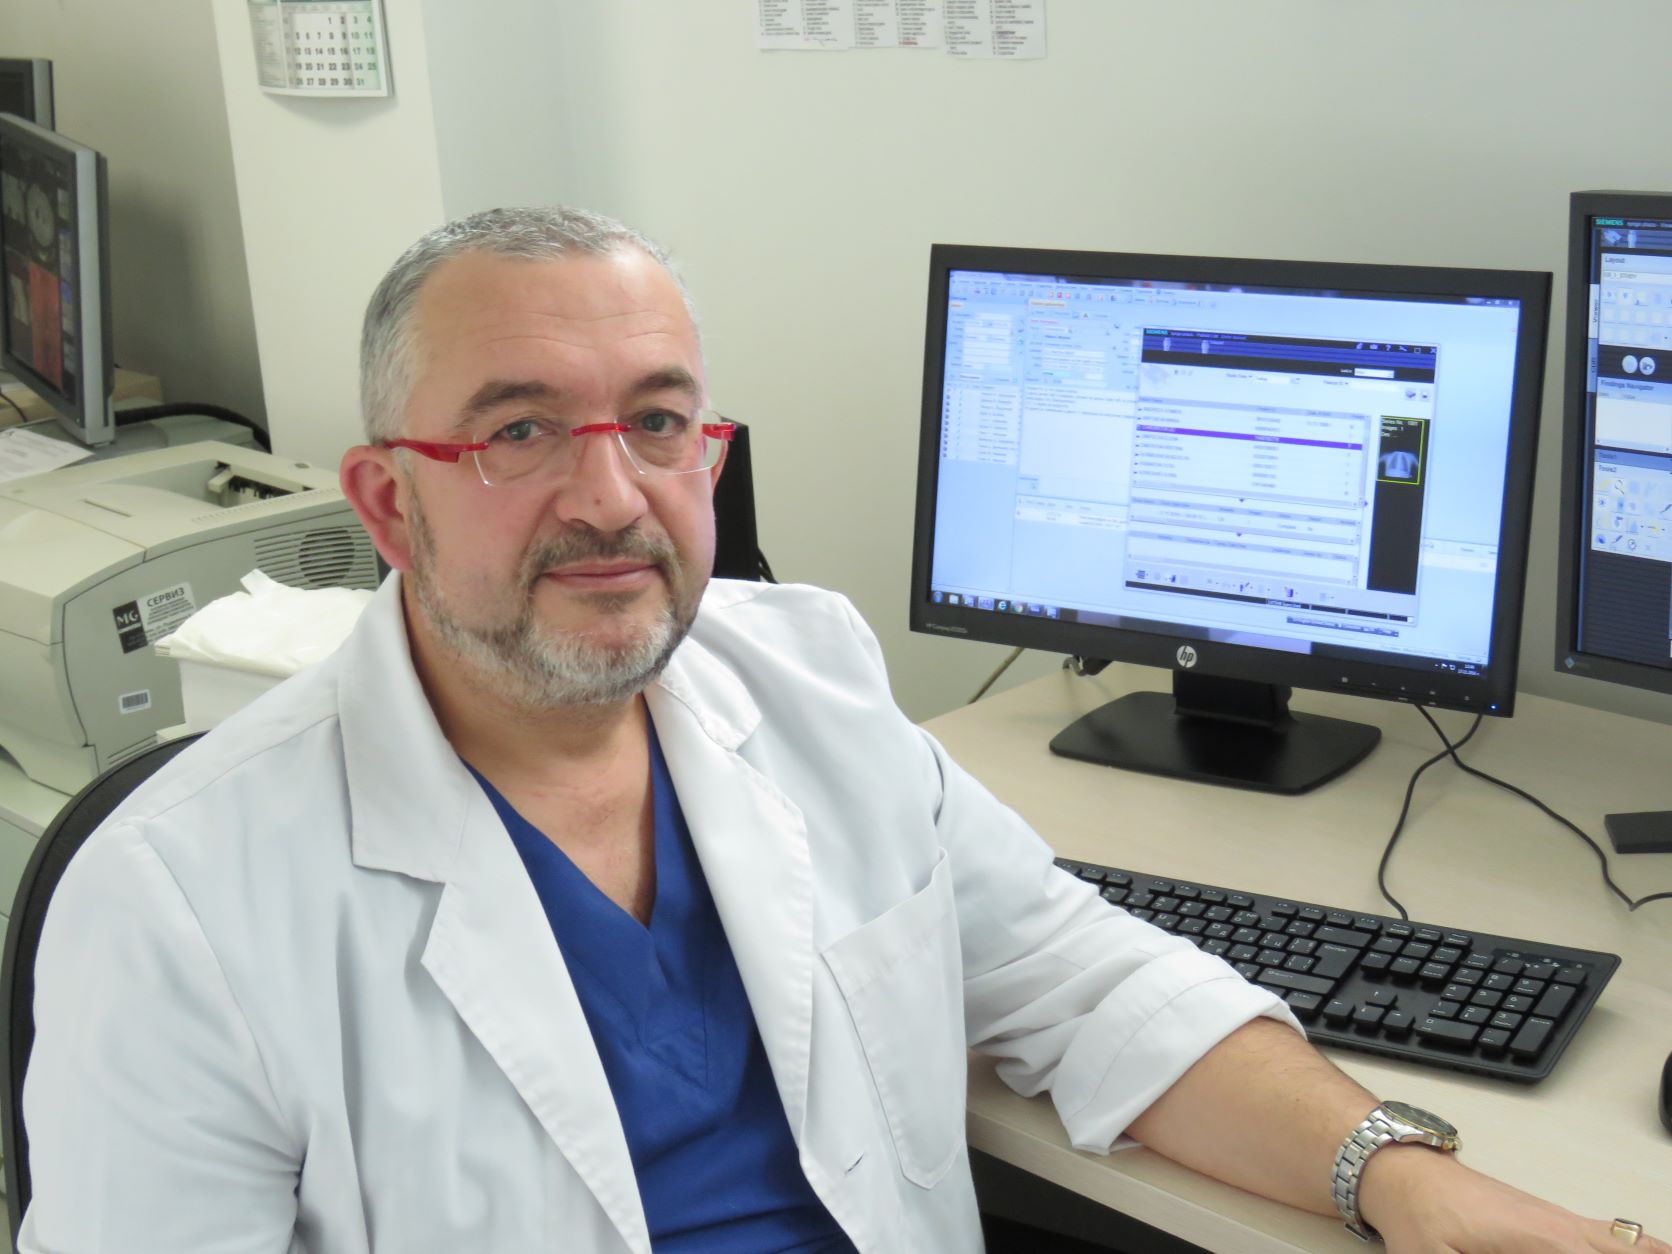 Д-р Живко Жеков: Неправилно е разбирането, че ЯМР е най-добрият избор за диагностика на всички заболявания